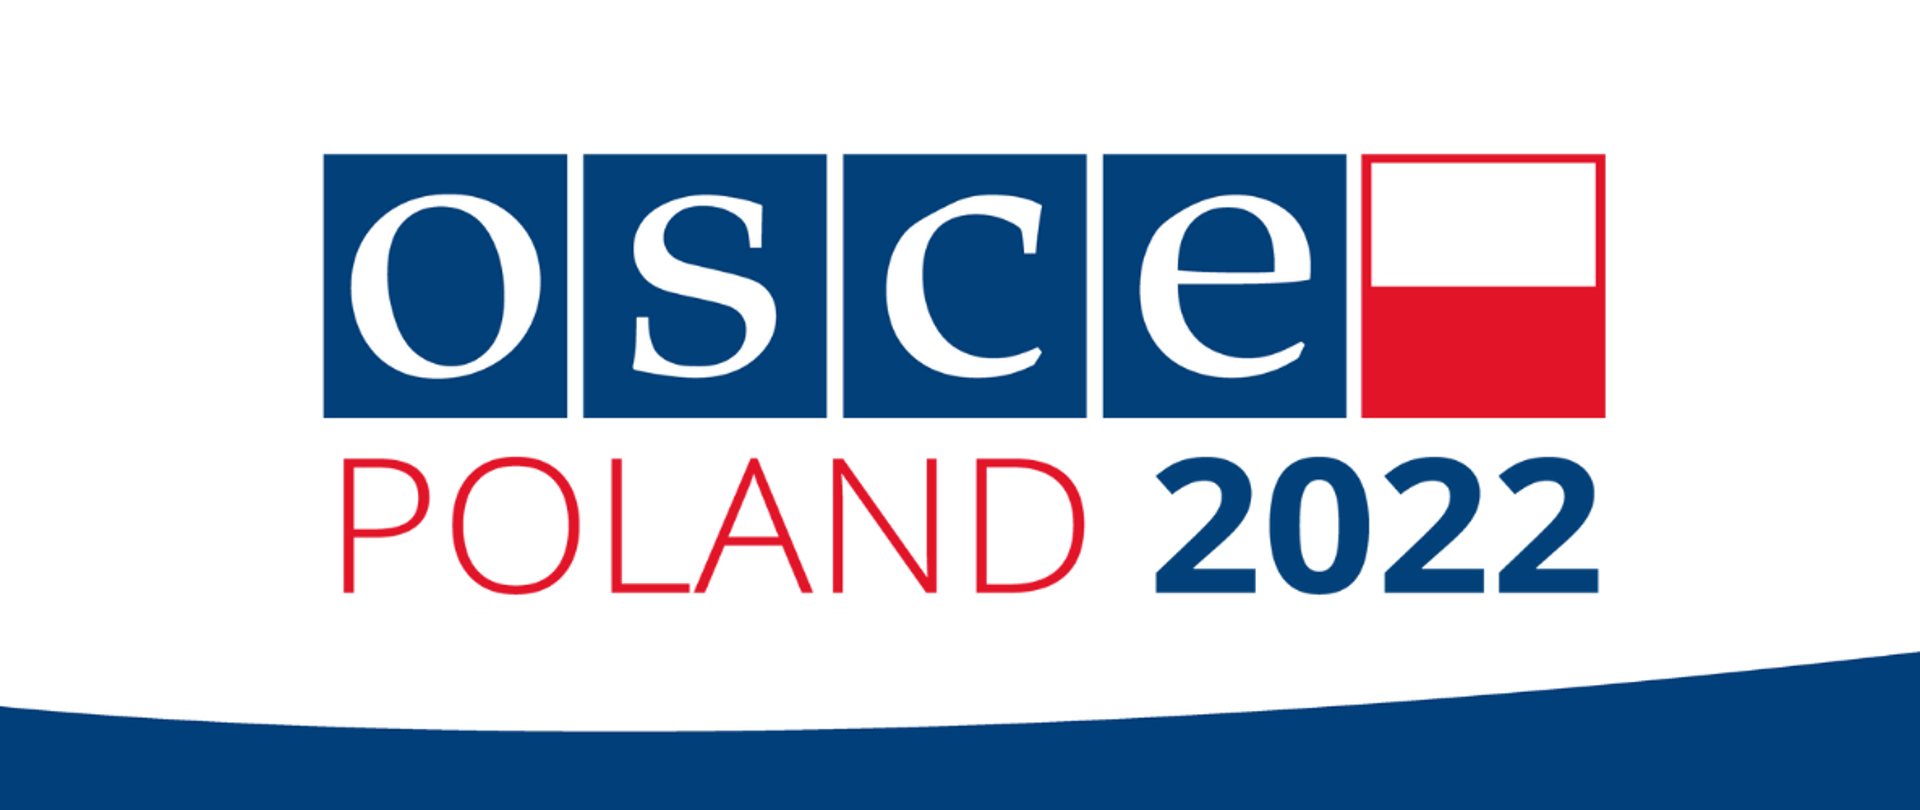 OSCE Poland 2022